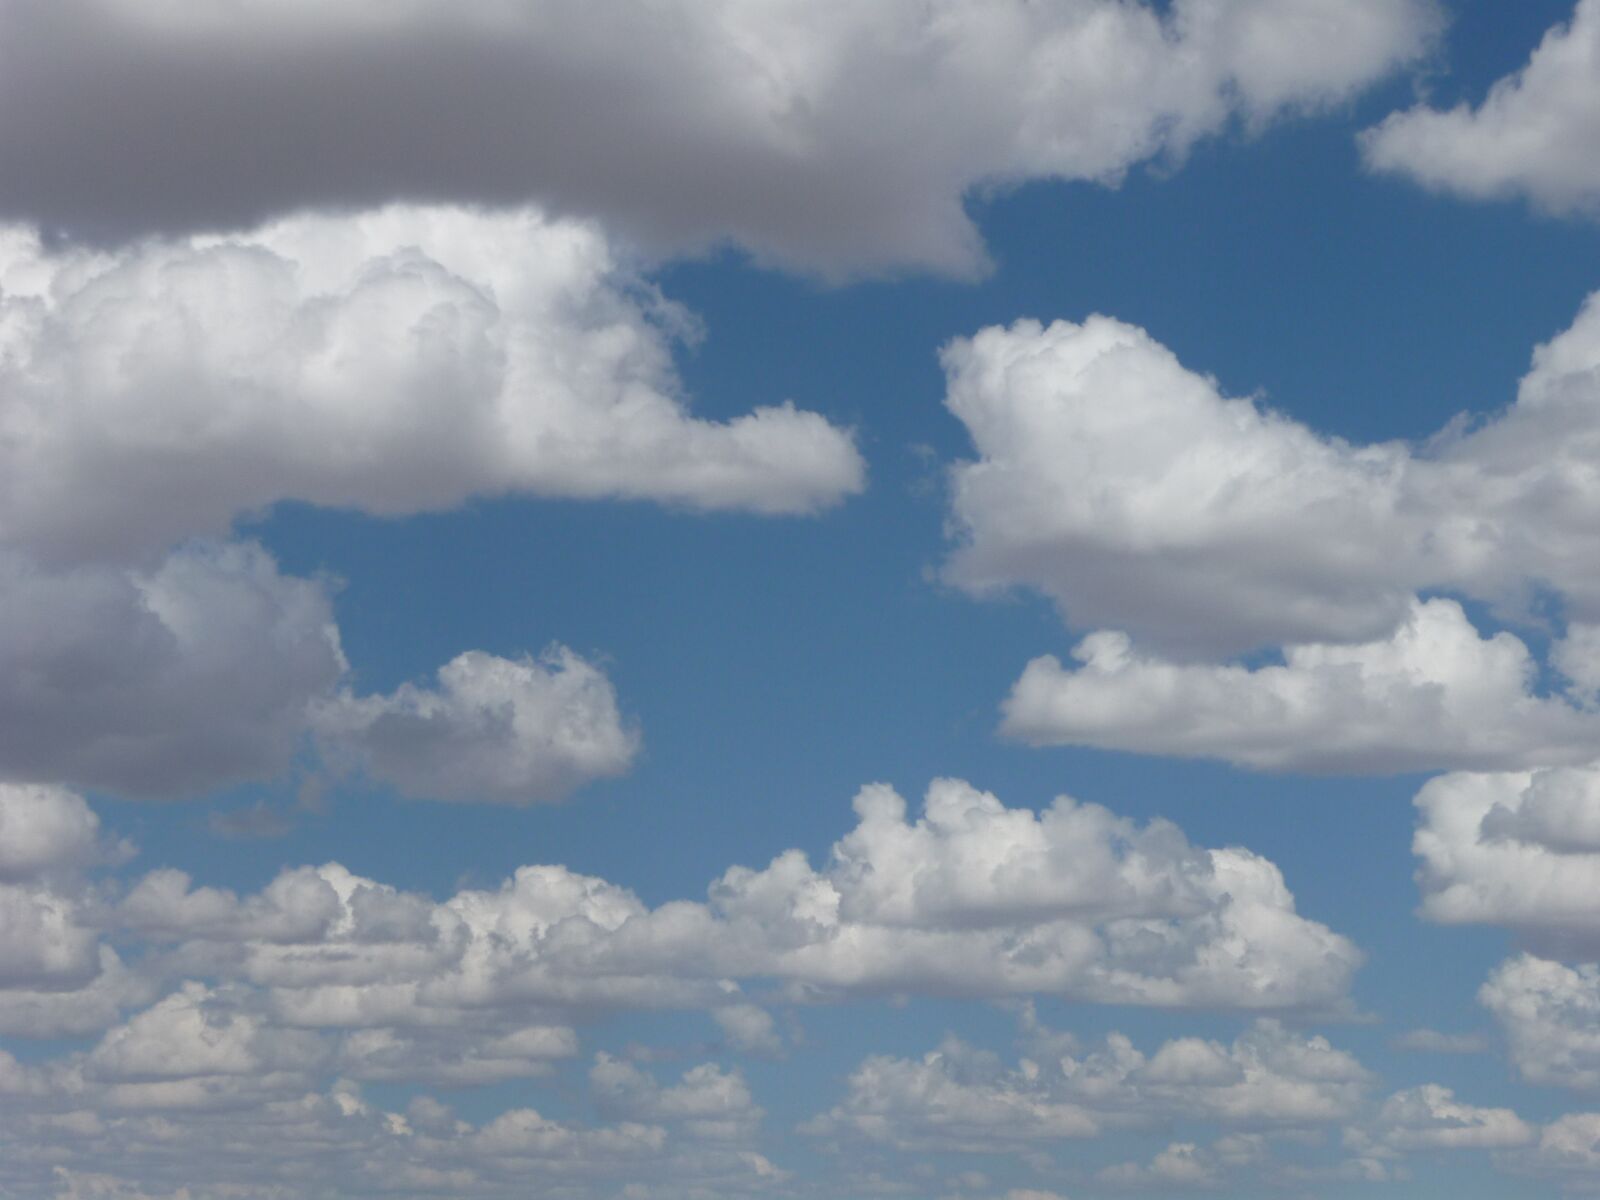 Panasonic Lumix DMC-TZ4 sample photo. Clouds, sky, weather photography